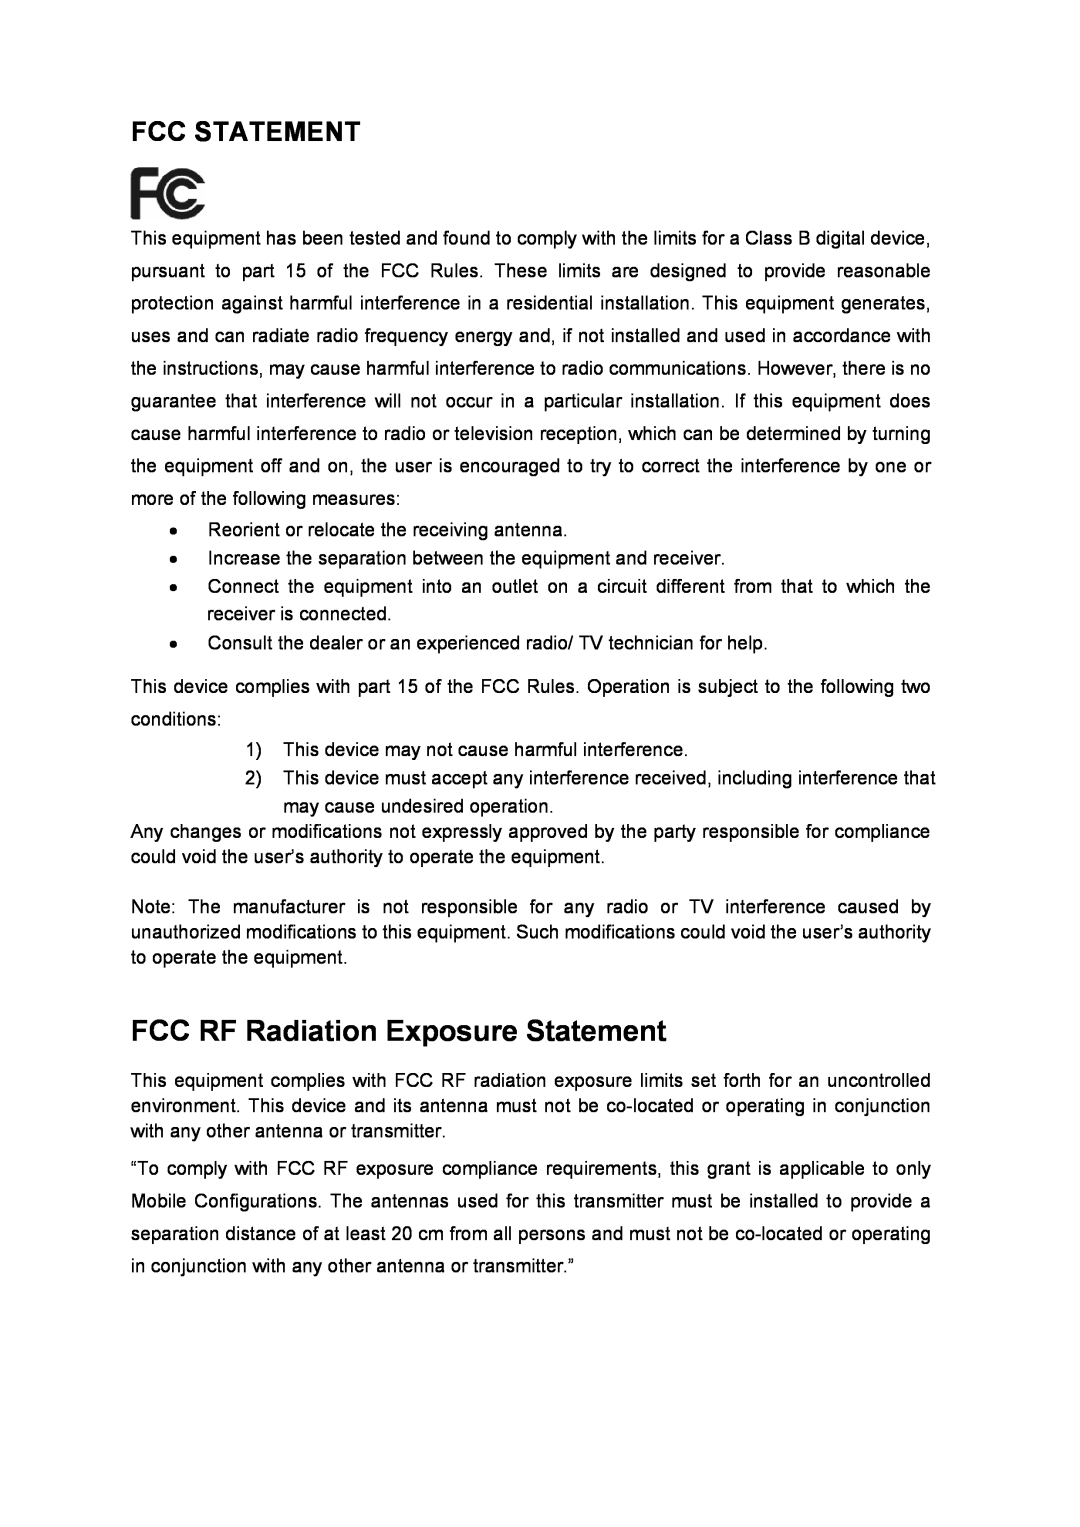 TP-Link TTL-WN751N manual FCC RF Radiation Exposure Statement, Fcc Statement 